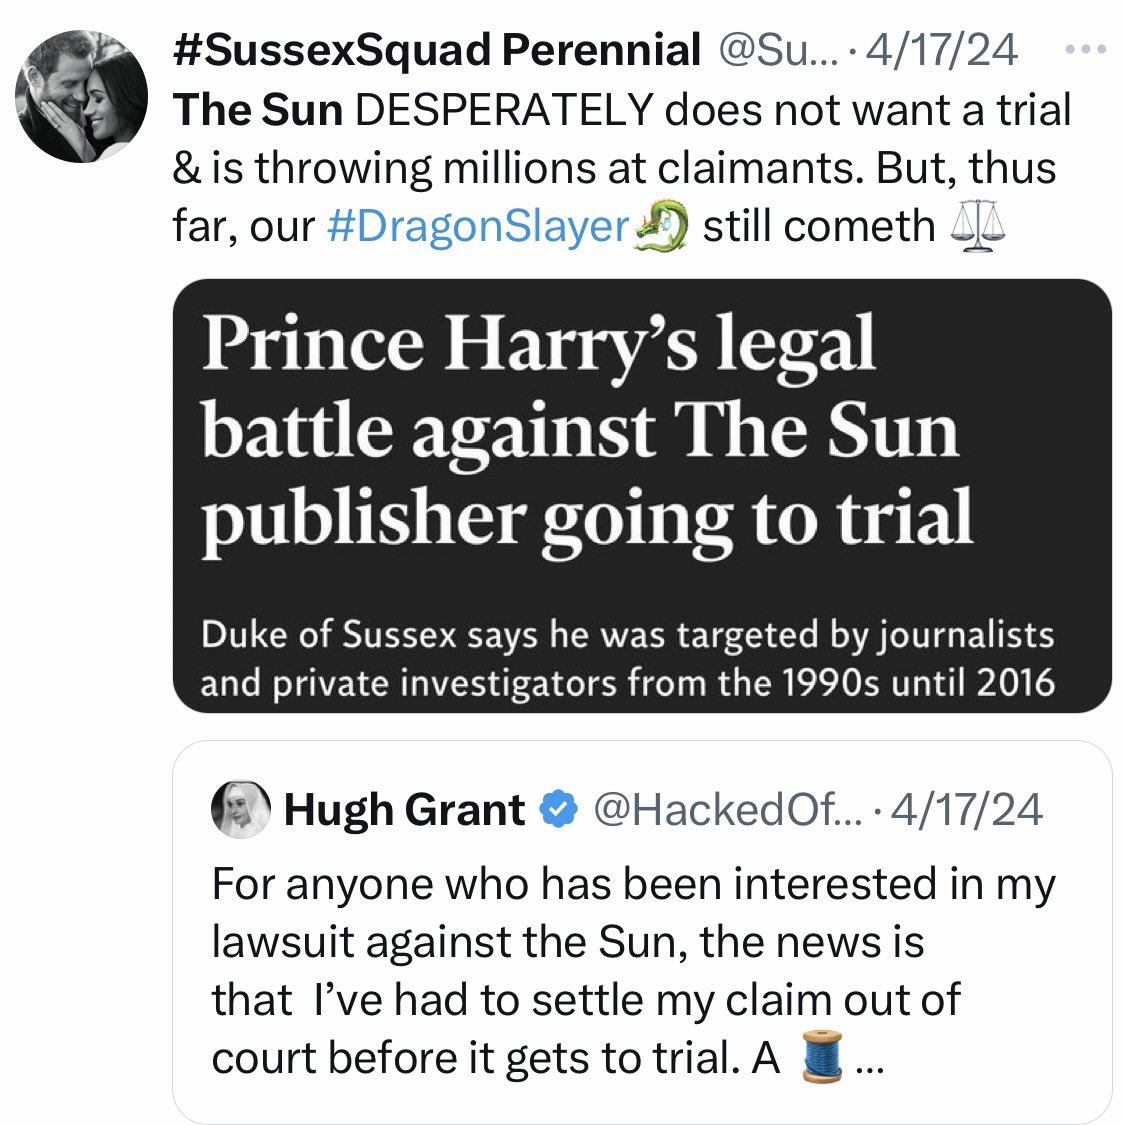 4/17/2024 Hugh Grant settled with The Sun. Here’s why … x.com/hackedoffhugh/…